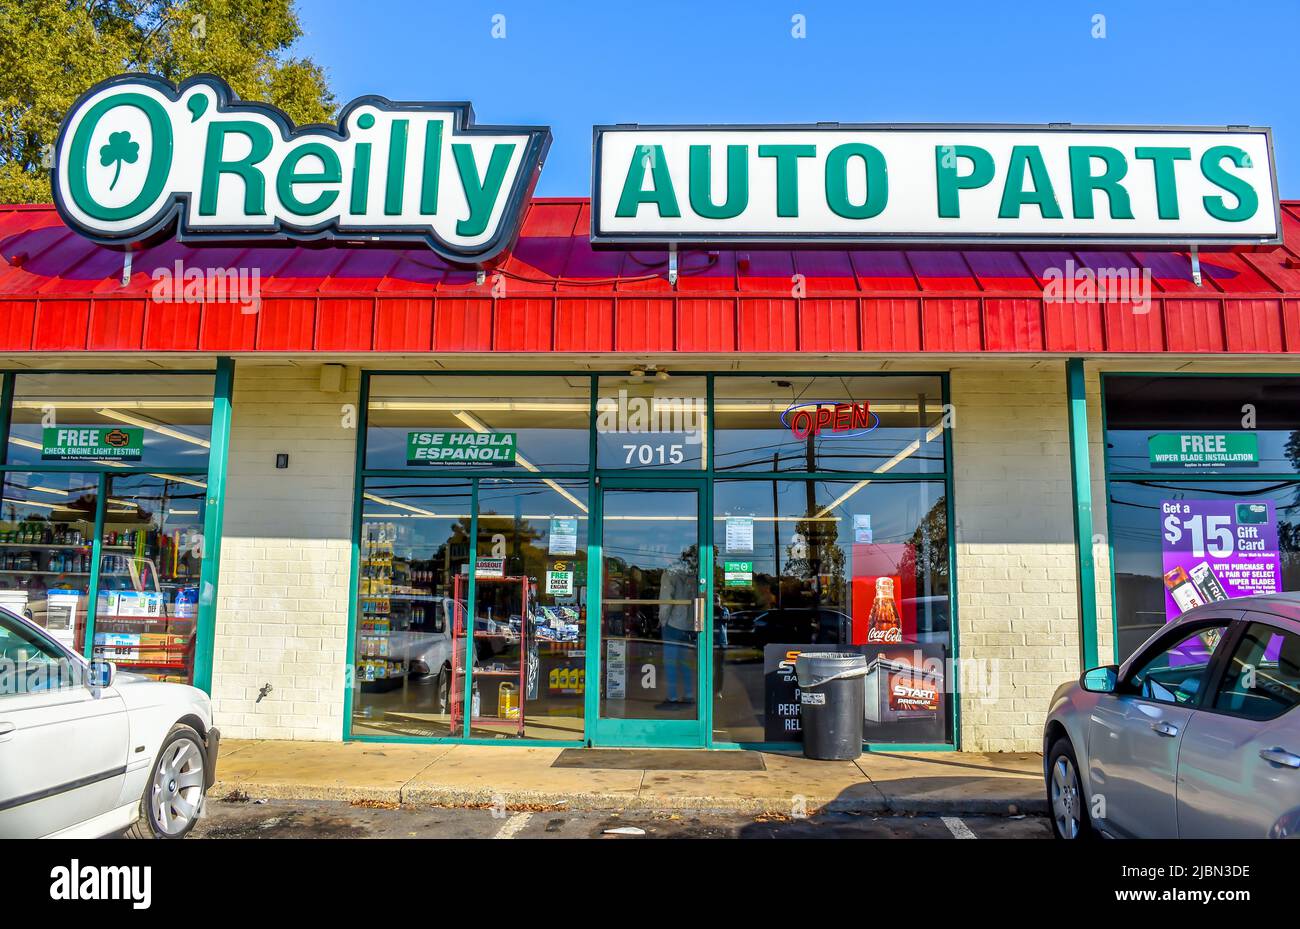 La marque de façade extérieure du magasin O'Reilly Auto Parts et son logo sont affichés en vert et blanc sur un toit côtelé rouge, au-dessus d'une fenêtre en verre devant le magasin. Banque D'Images